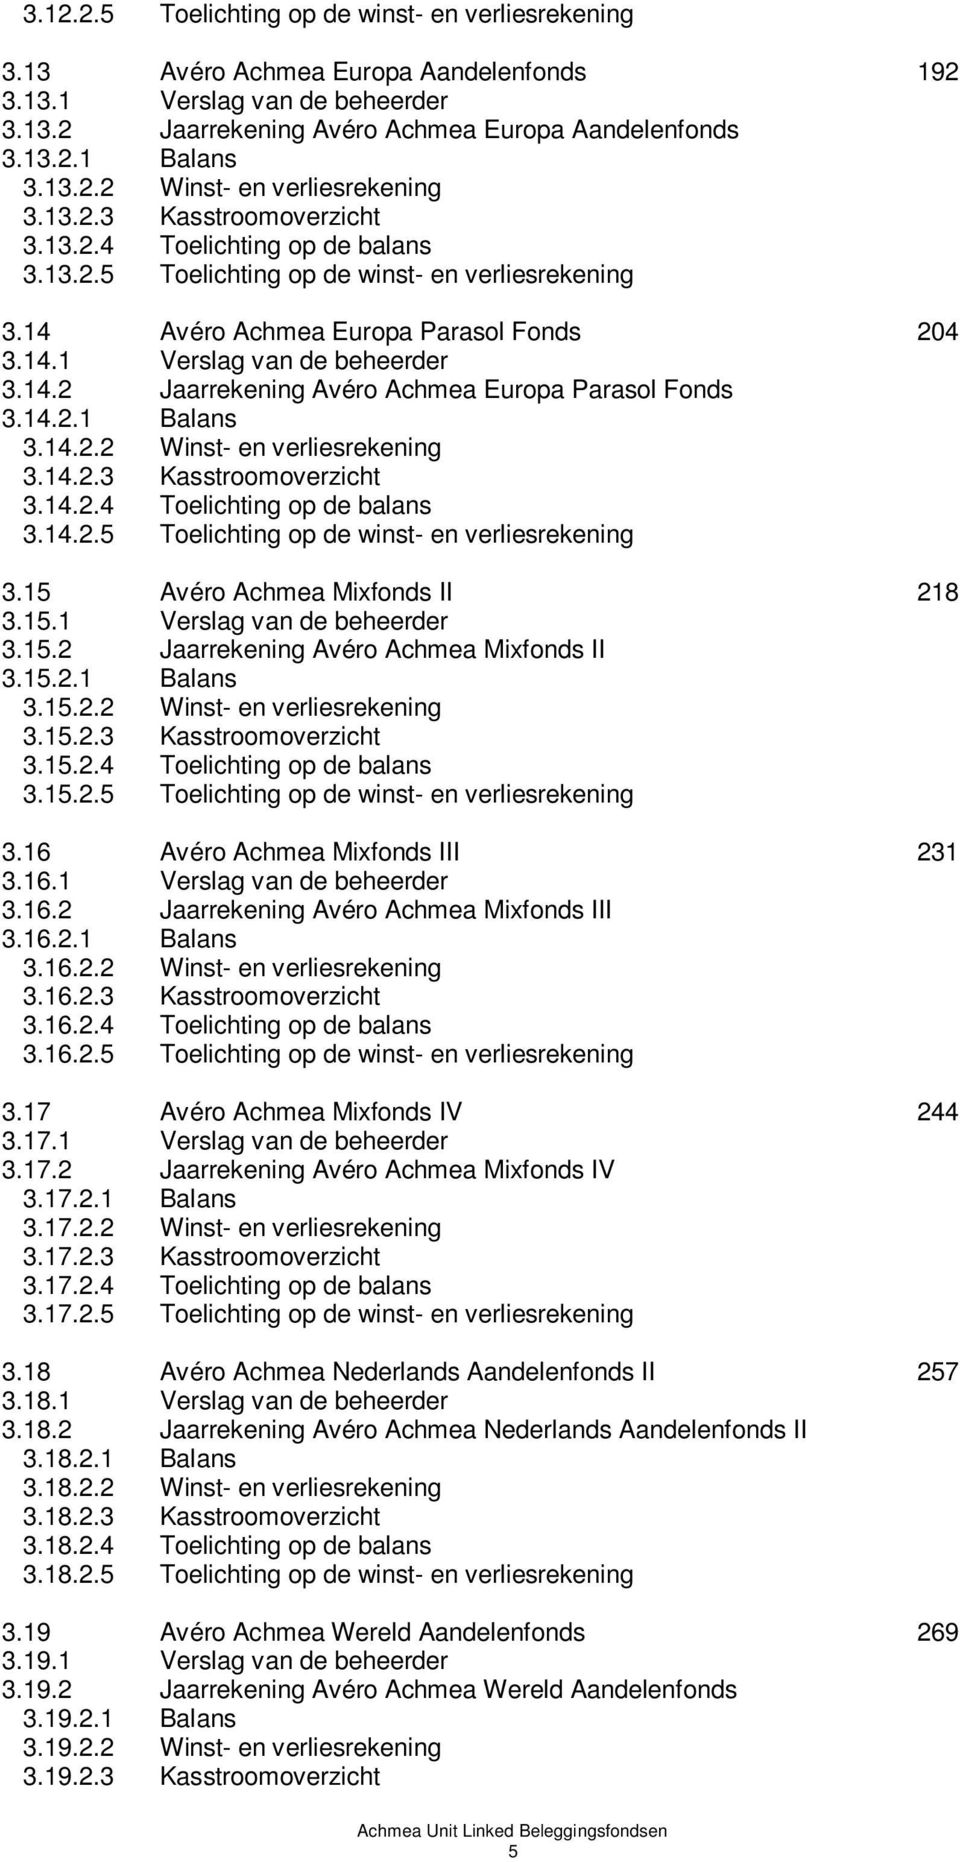 14.2 Jaarrekening Avéro Achmea Europa Parasol Fonds 3.14.2.1 Balans 3.14.2.2 Winst- en verliesrekening 3.14.2.3 Kasstroomoverzicht 3.14.2.4 Toelichting op de balans 3.14.2.5 Toelichting op de winst- en verliesrekening 3.